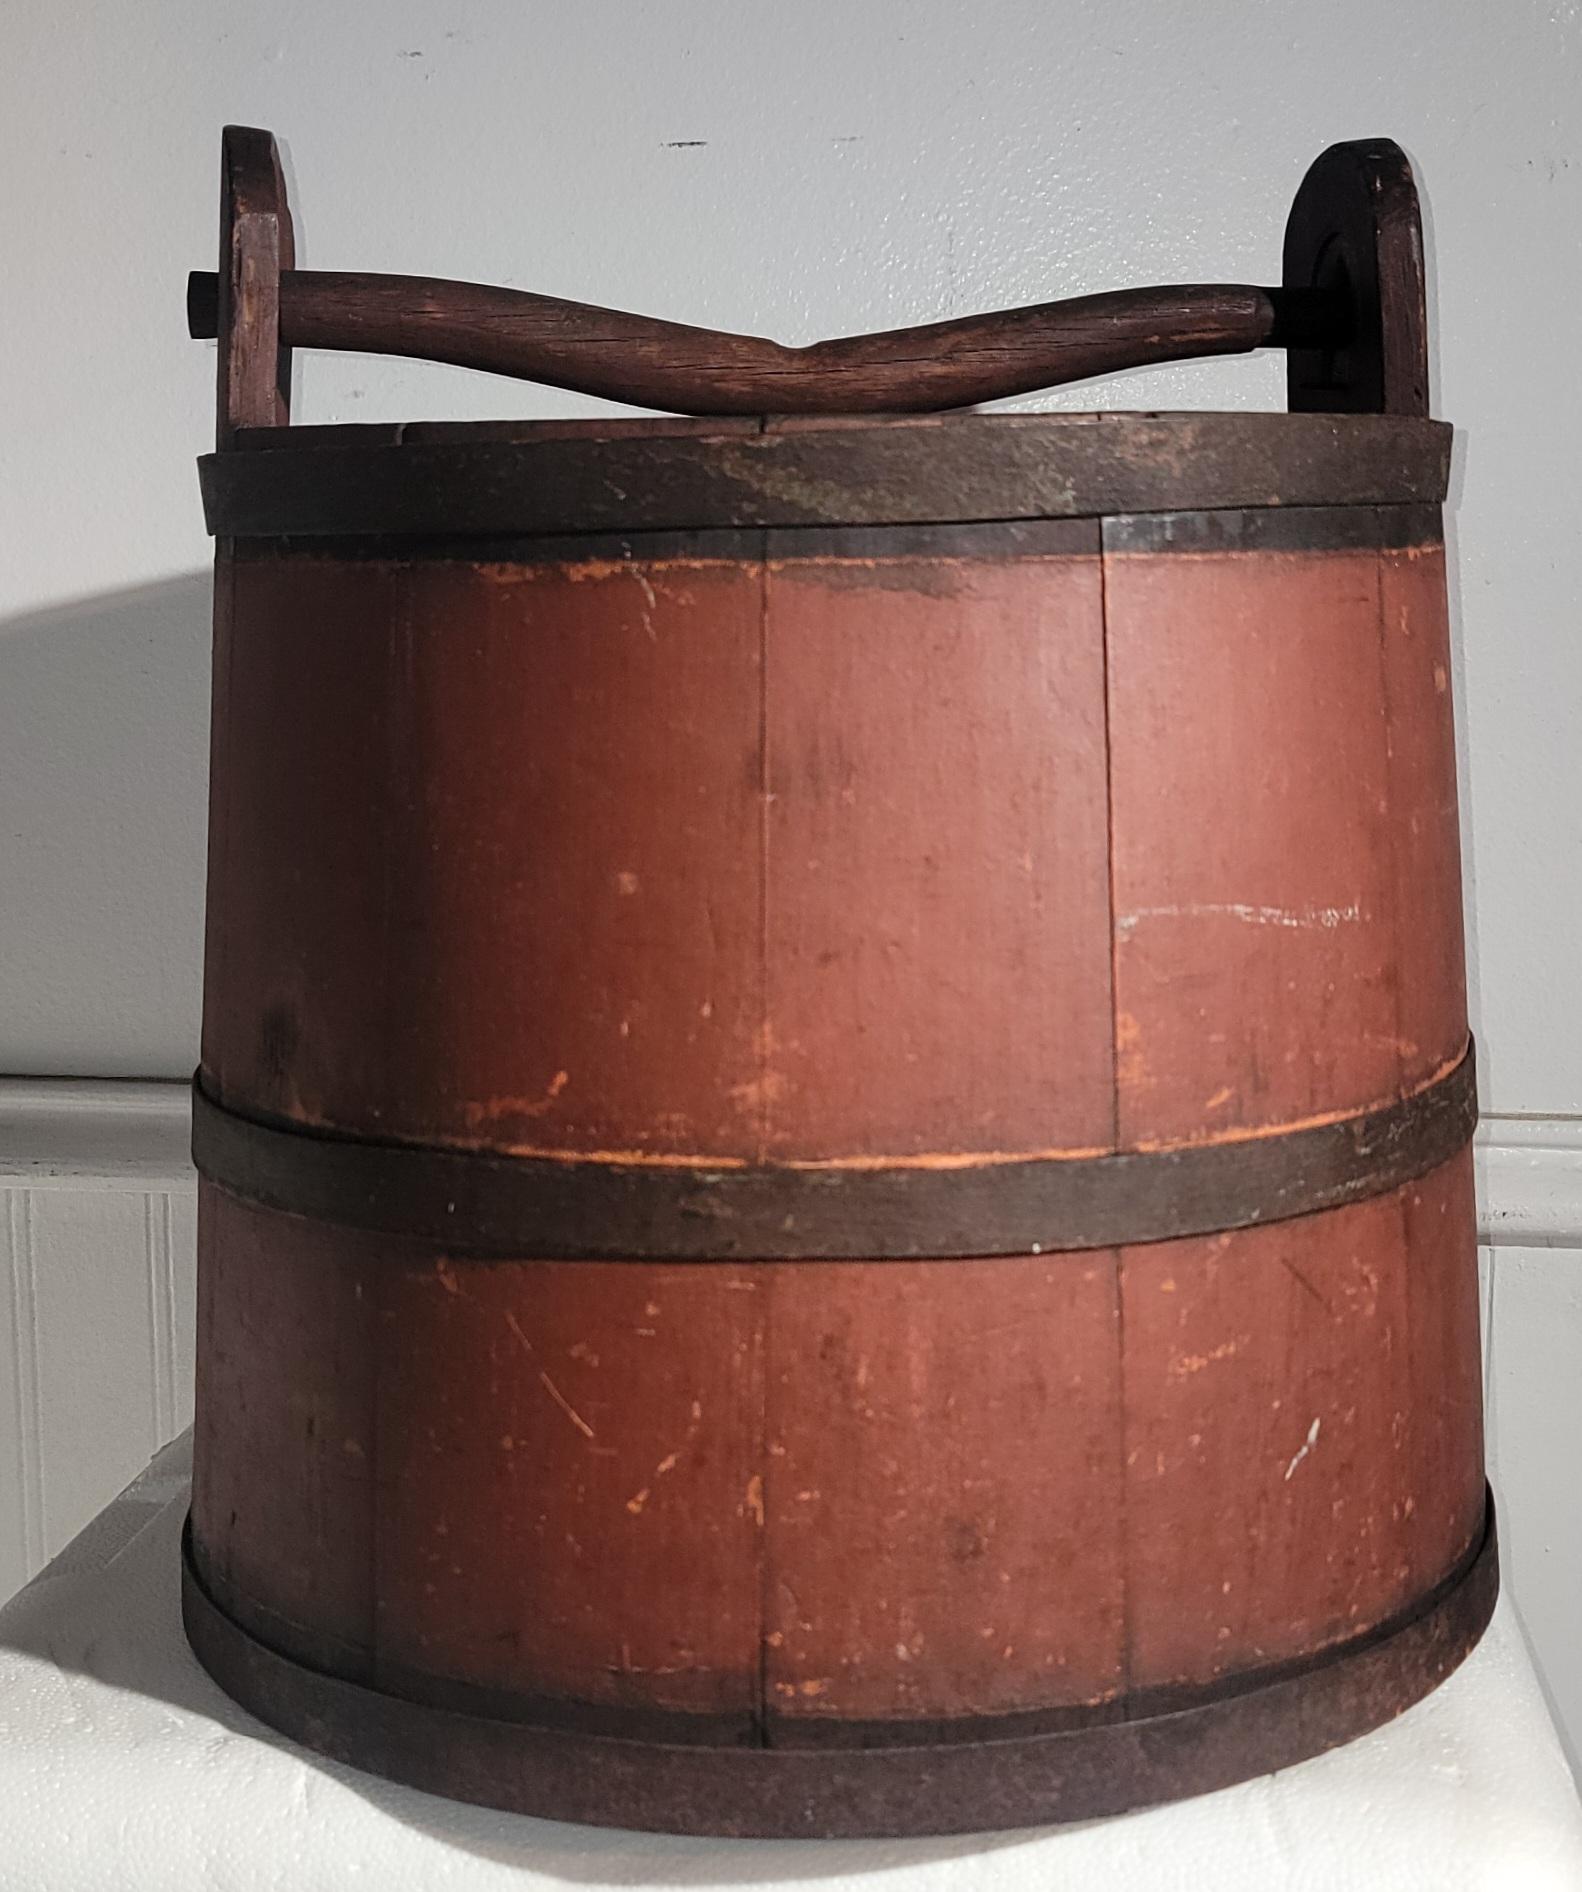 Signé et daté 1848 -WP original water bucket with the original wood handle. Ce seau folklorique fait à la main a des bandes de métal qui le maintiennent serré.